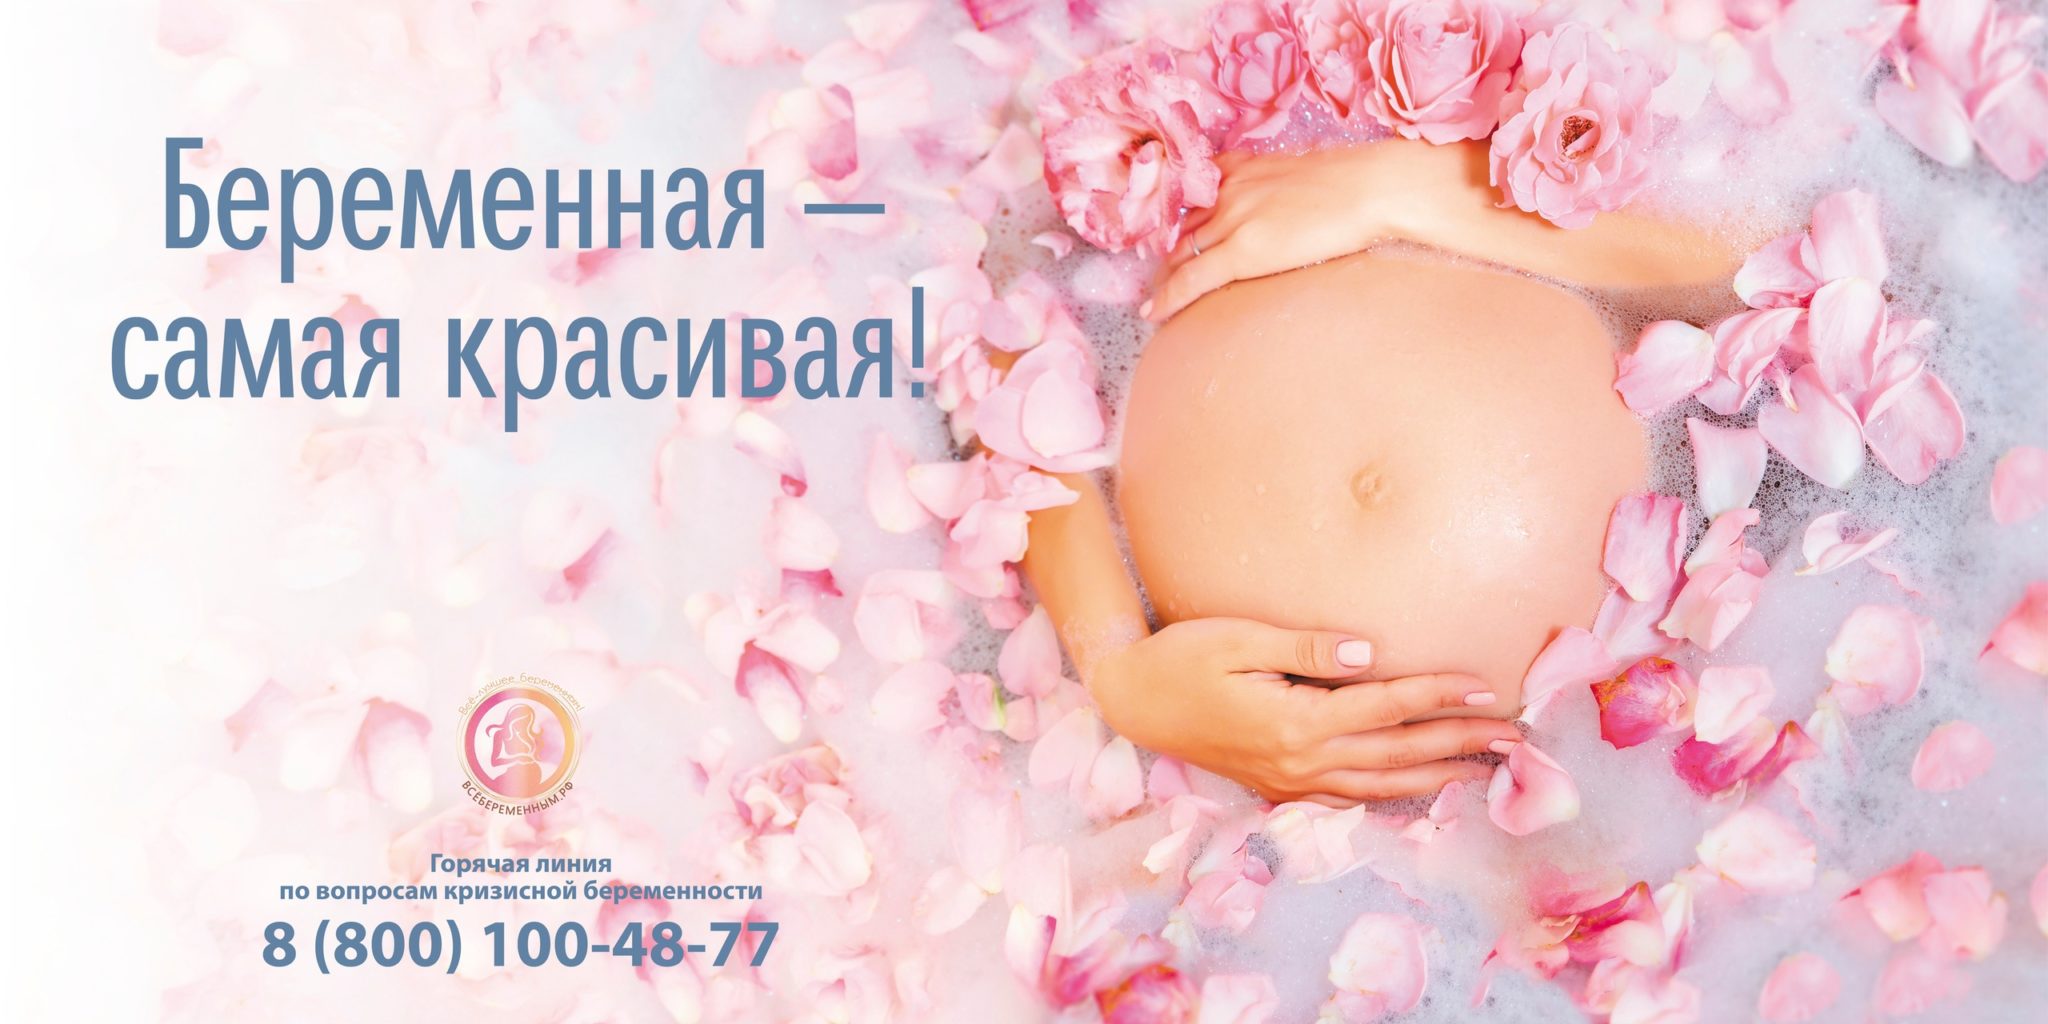 Мероприятия ко дню беременных. День беременных. Пожелания будущей маме. День беременных баннер. 07 Апреля день беременных.